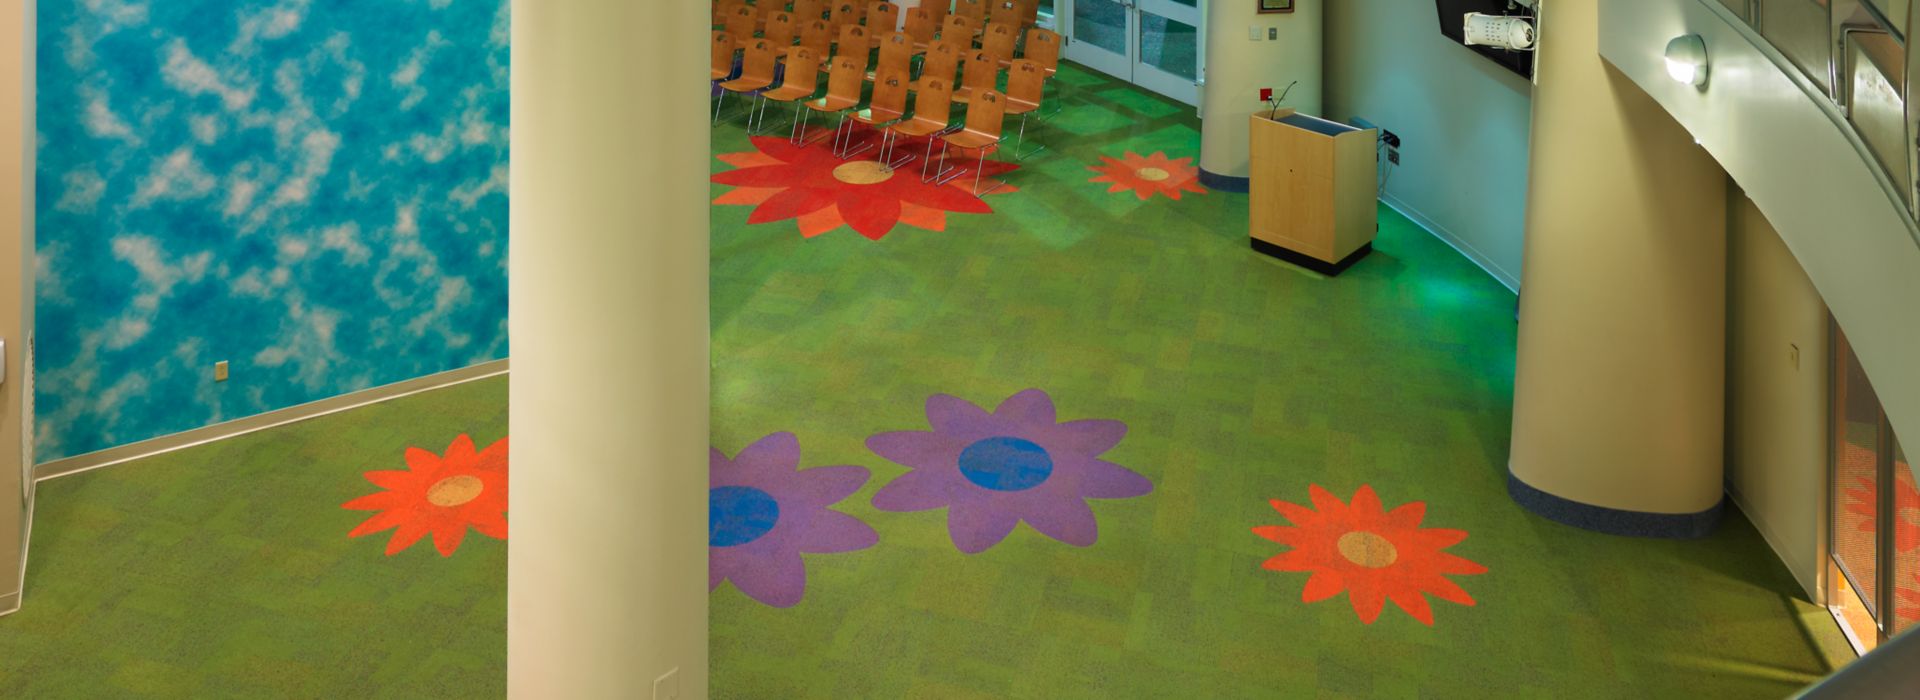 Interface Cubic Colours carpet tile cut into flower shapes imagen número 1